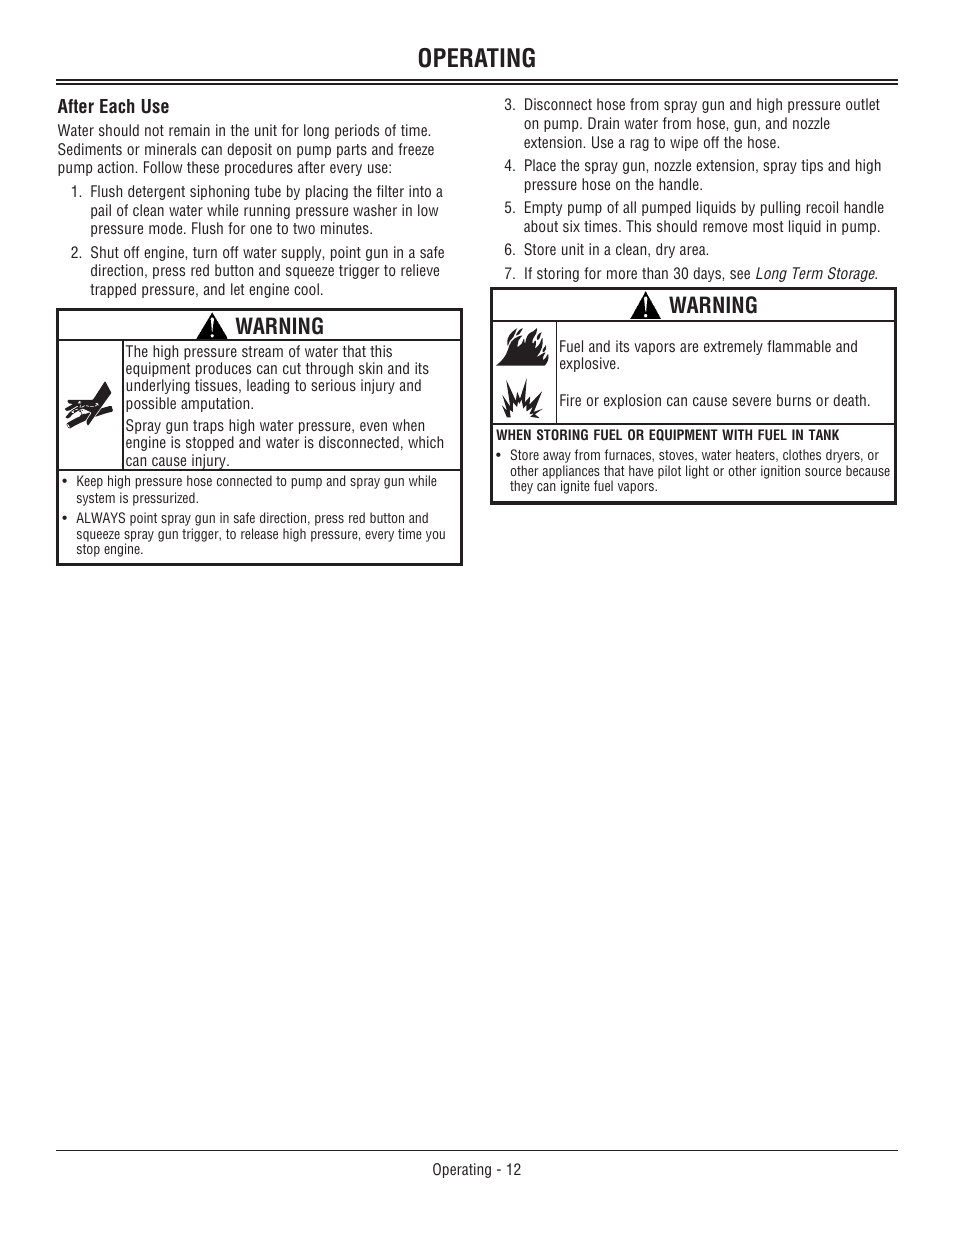 Operating, Warning | John Deere OMM156510 User Manual | Page 16 / 24